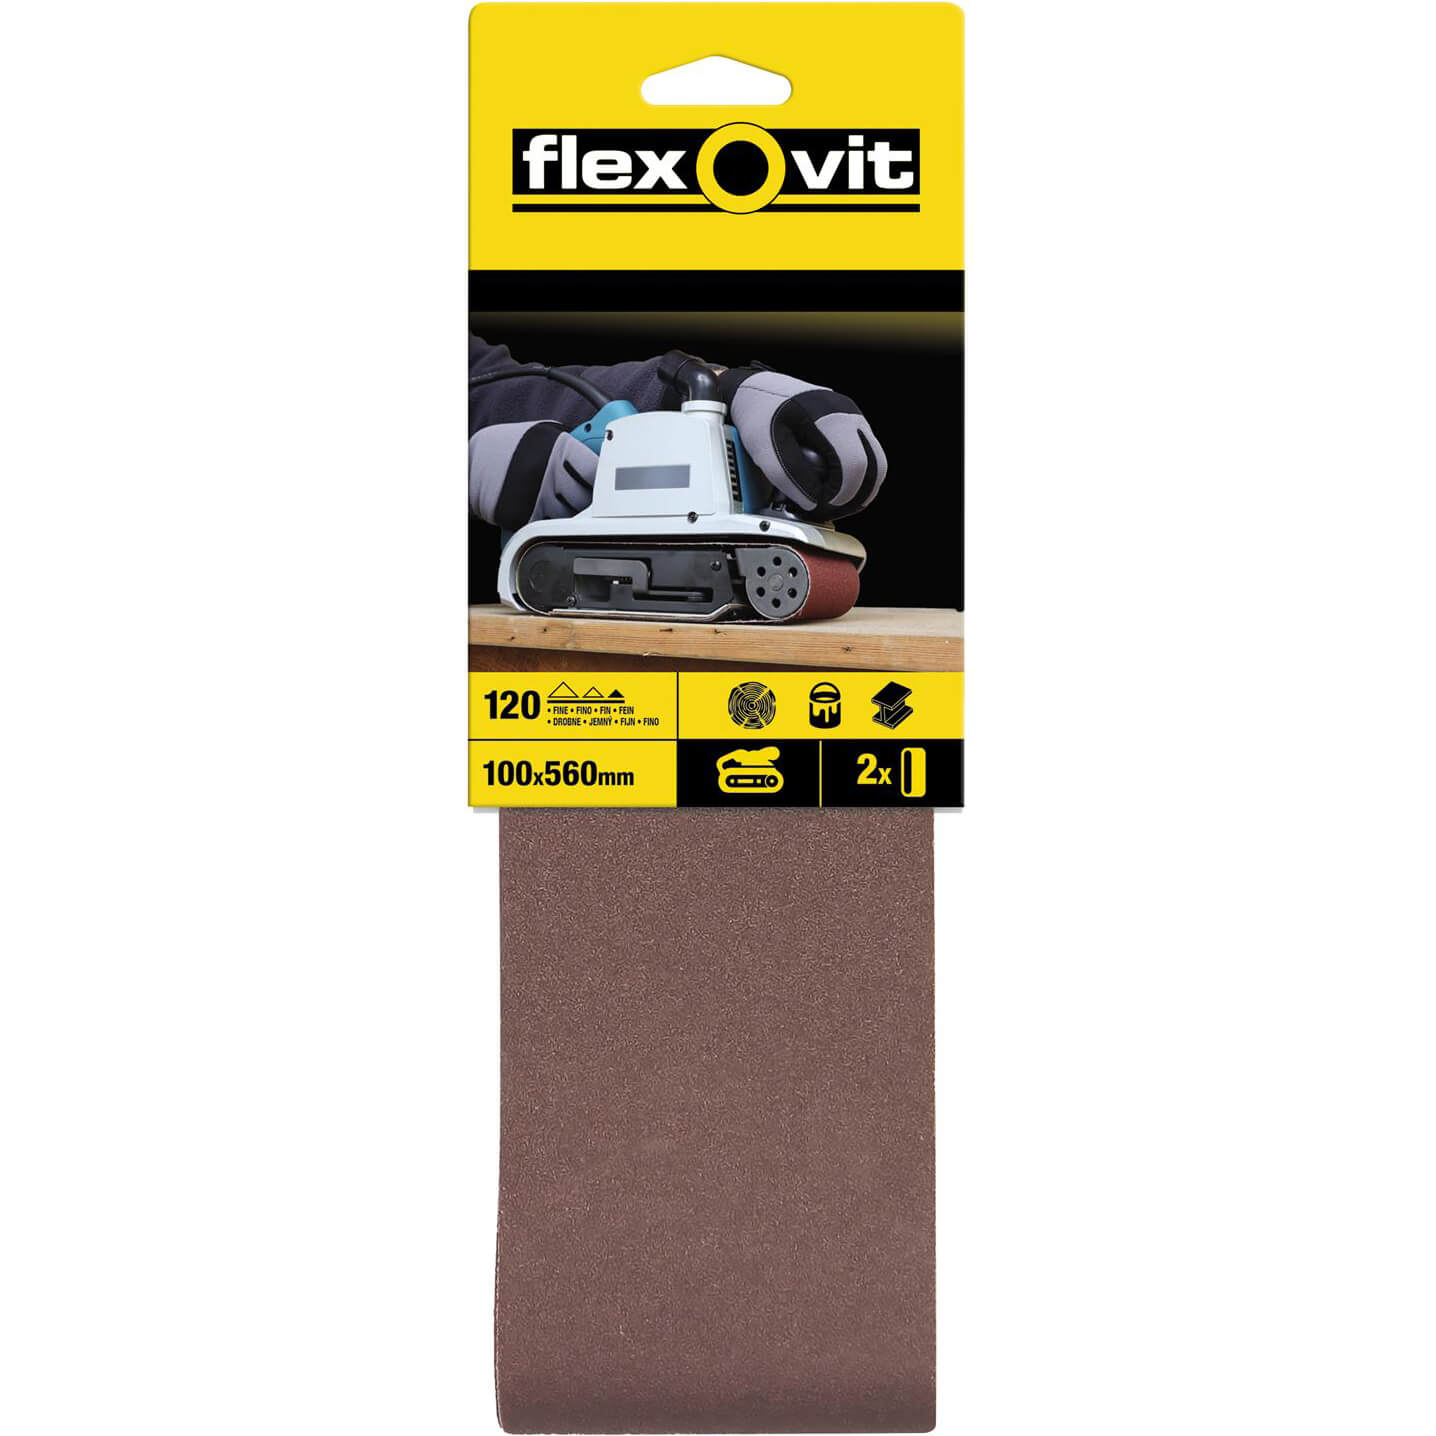 Image of Flexovit Sanding Belts 100 x 560mm 120g Pack of 2